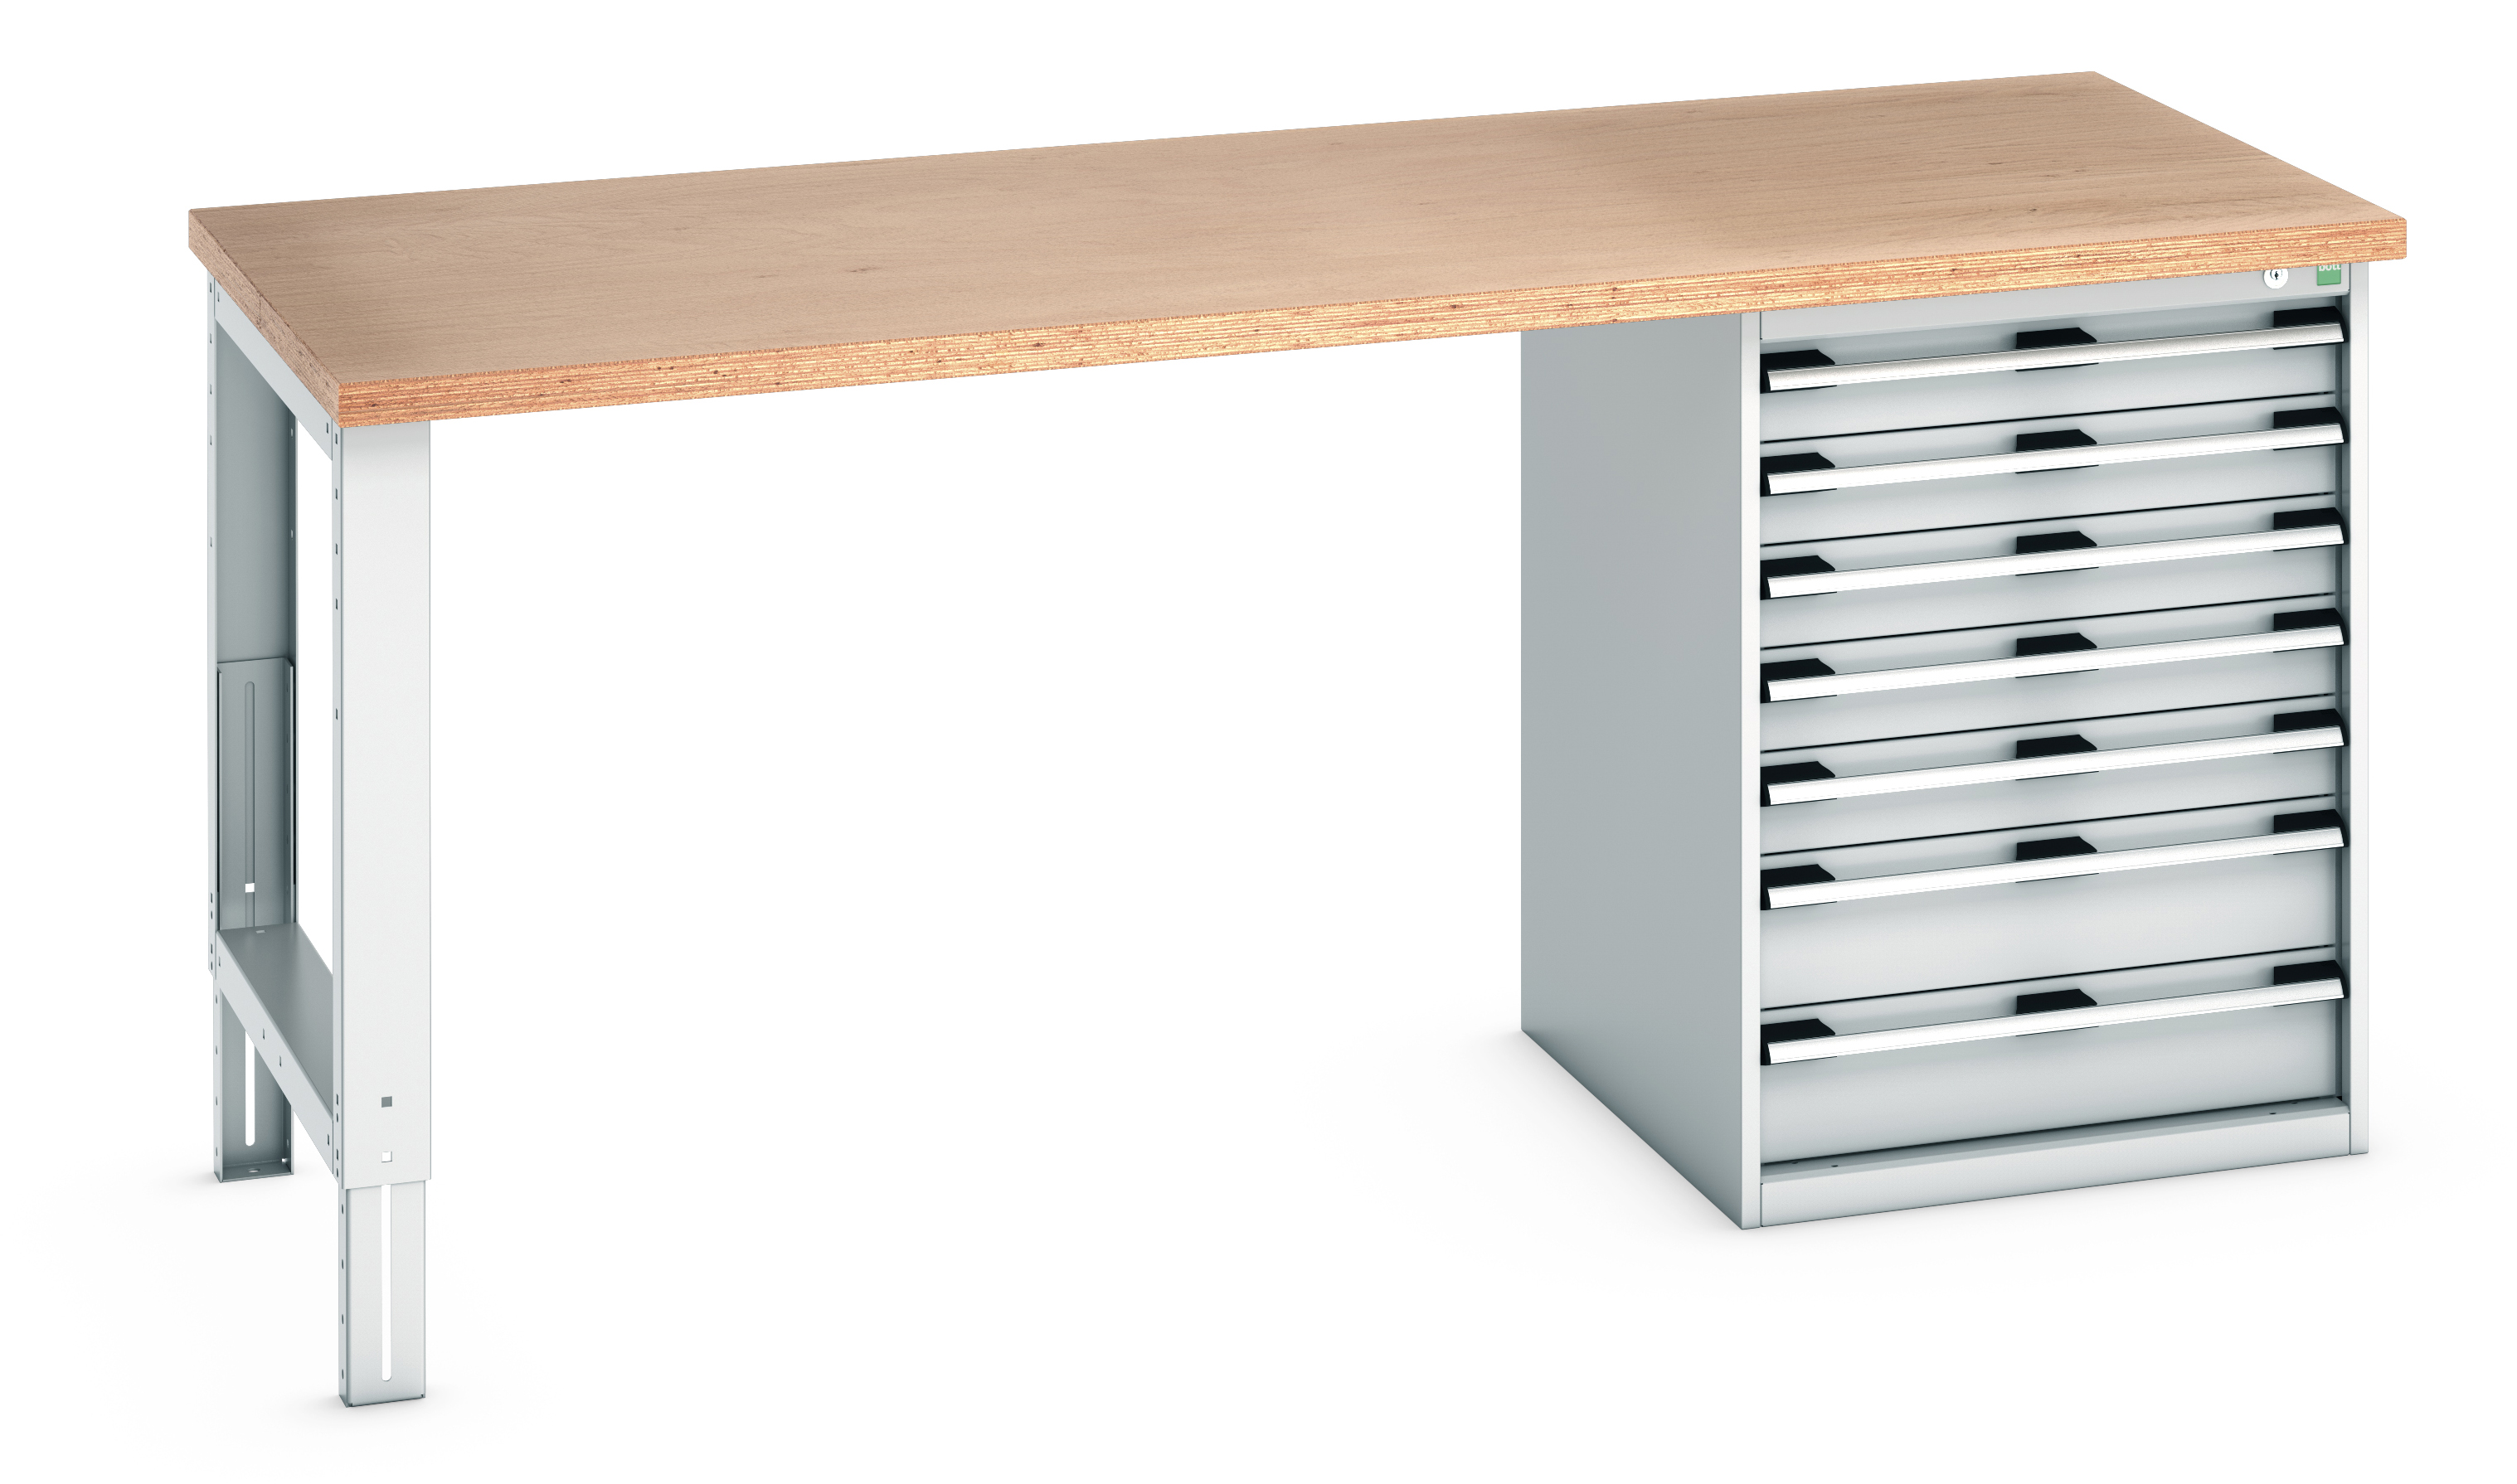 Bott Cubio Pedestal Bench With 7 Drawer Cabinet - 41004123.16V